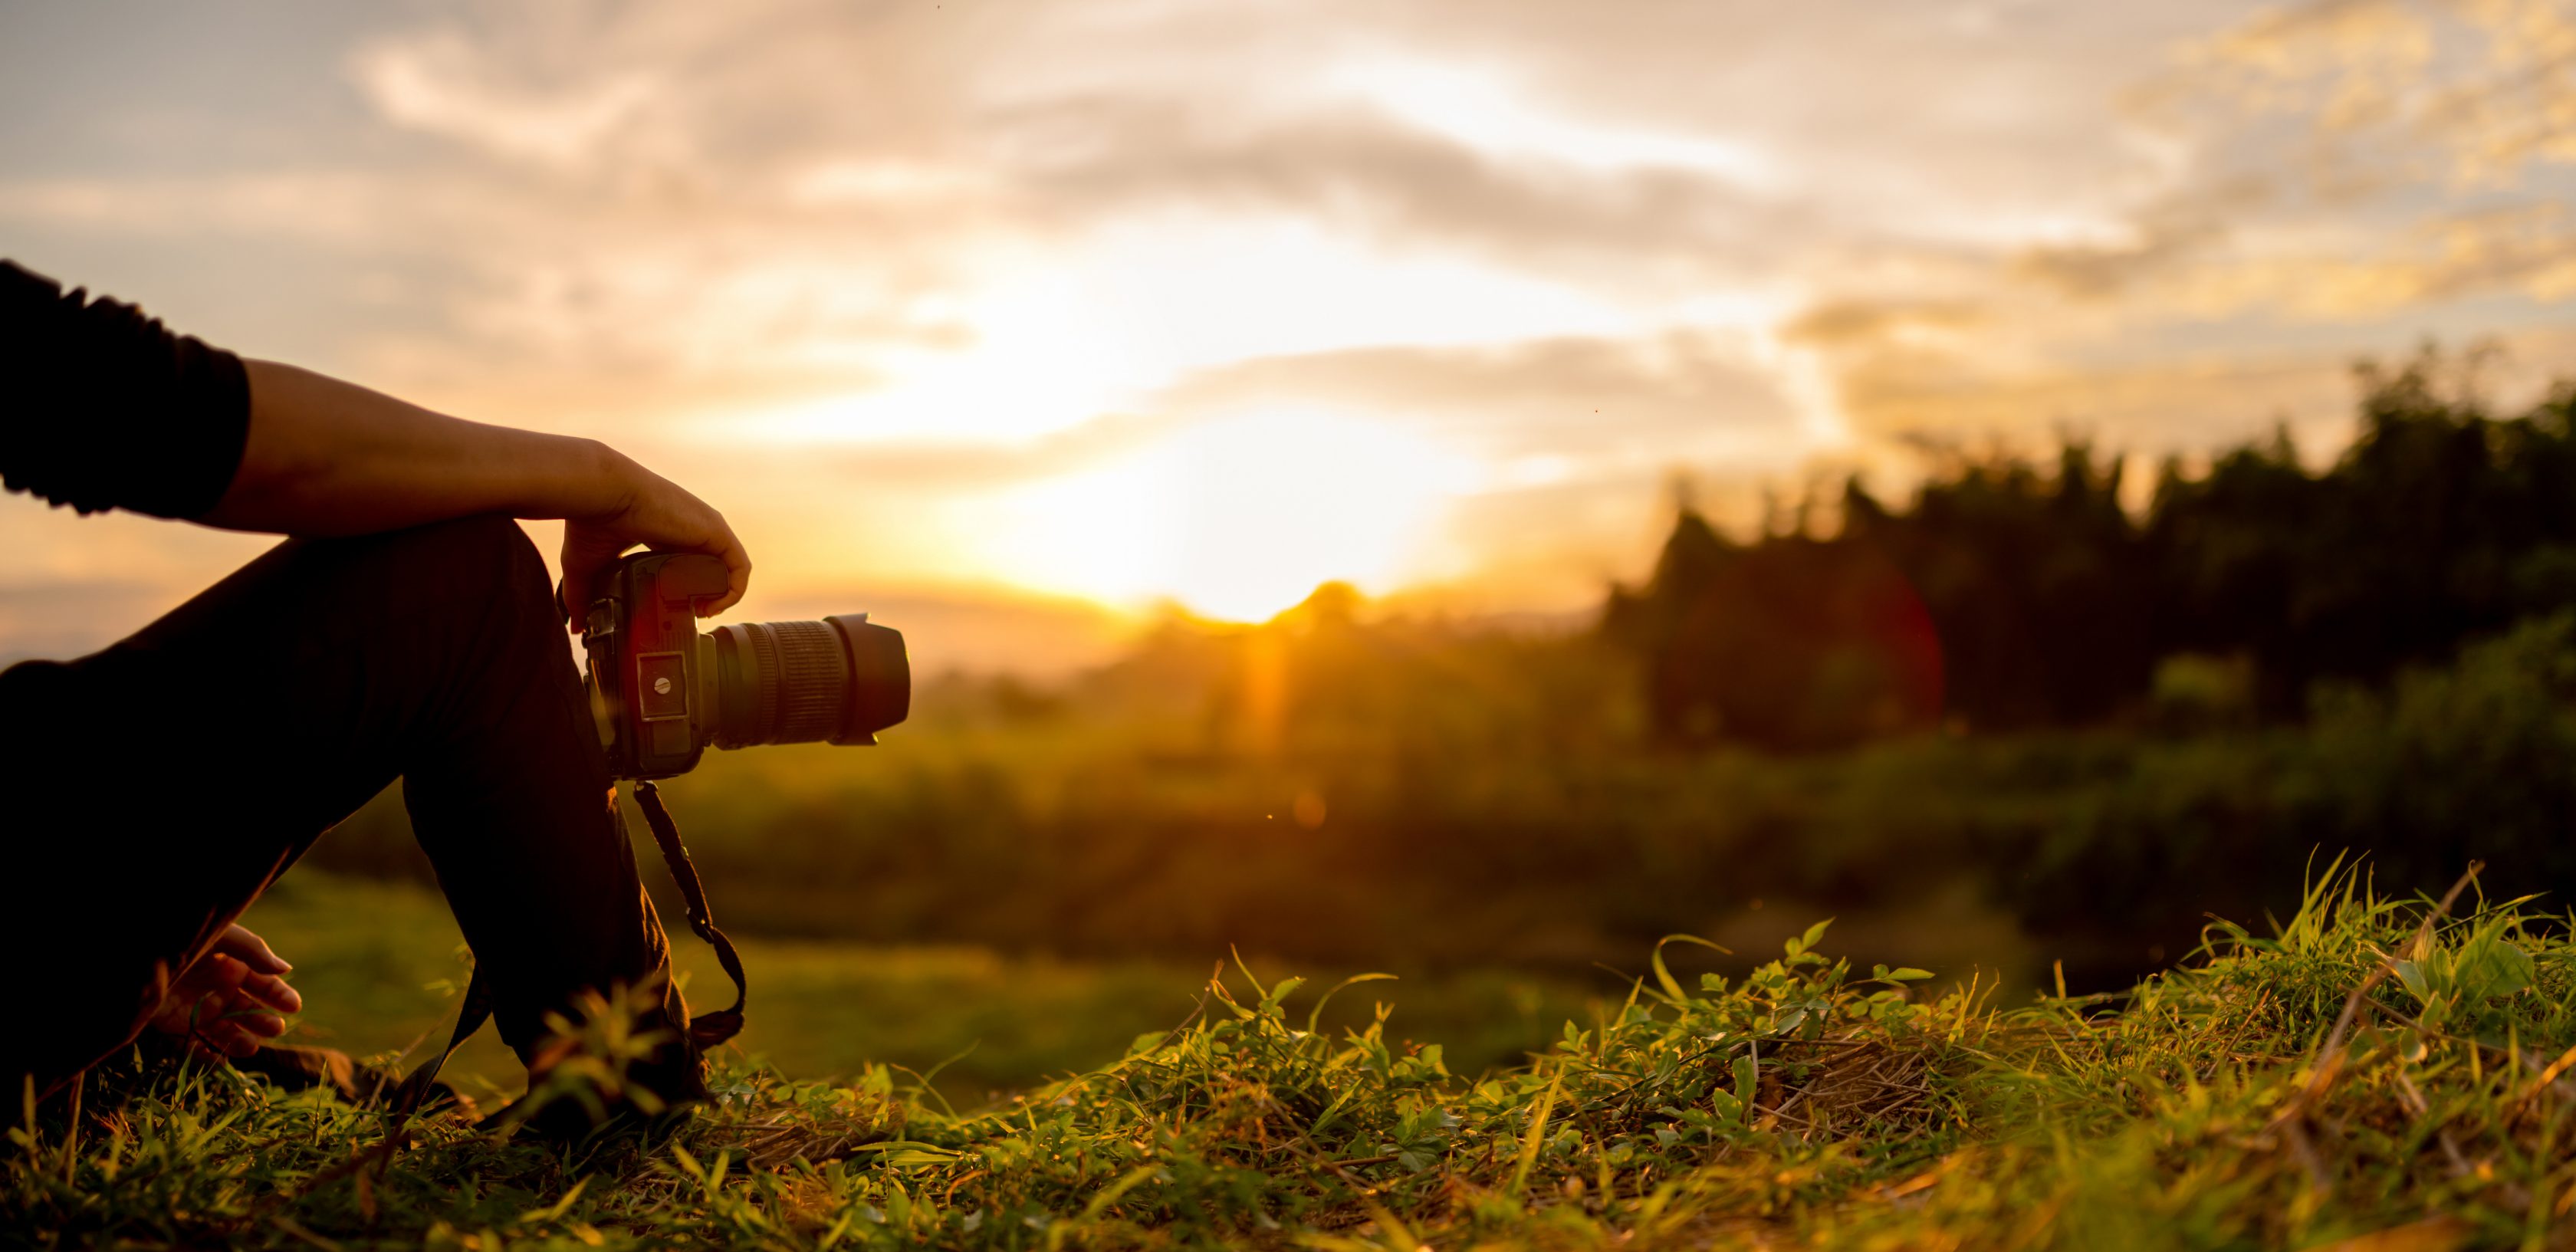 Ένας φωτογράφος κάθεται σε έναν βράχο θαυμάζοντας την φύση και το ηλιοβασίλεμα